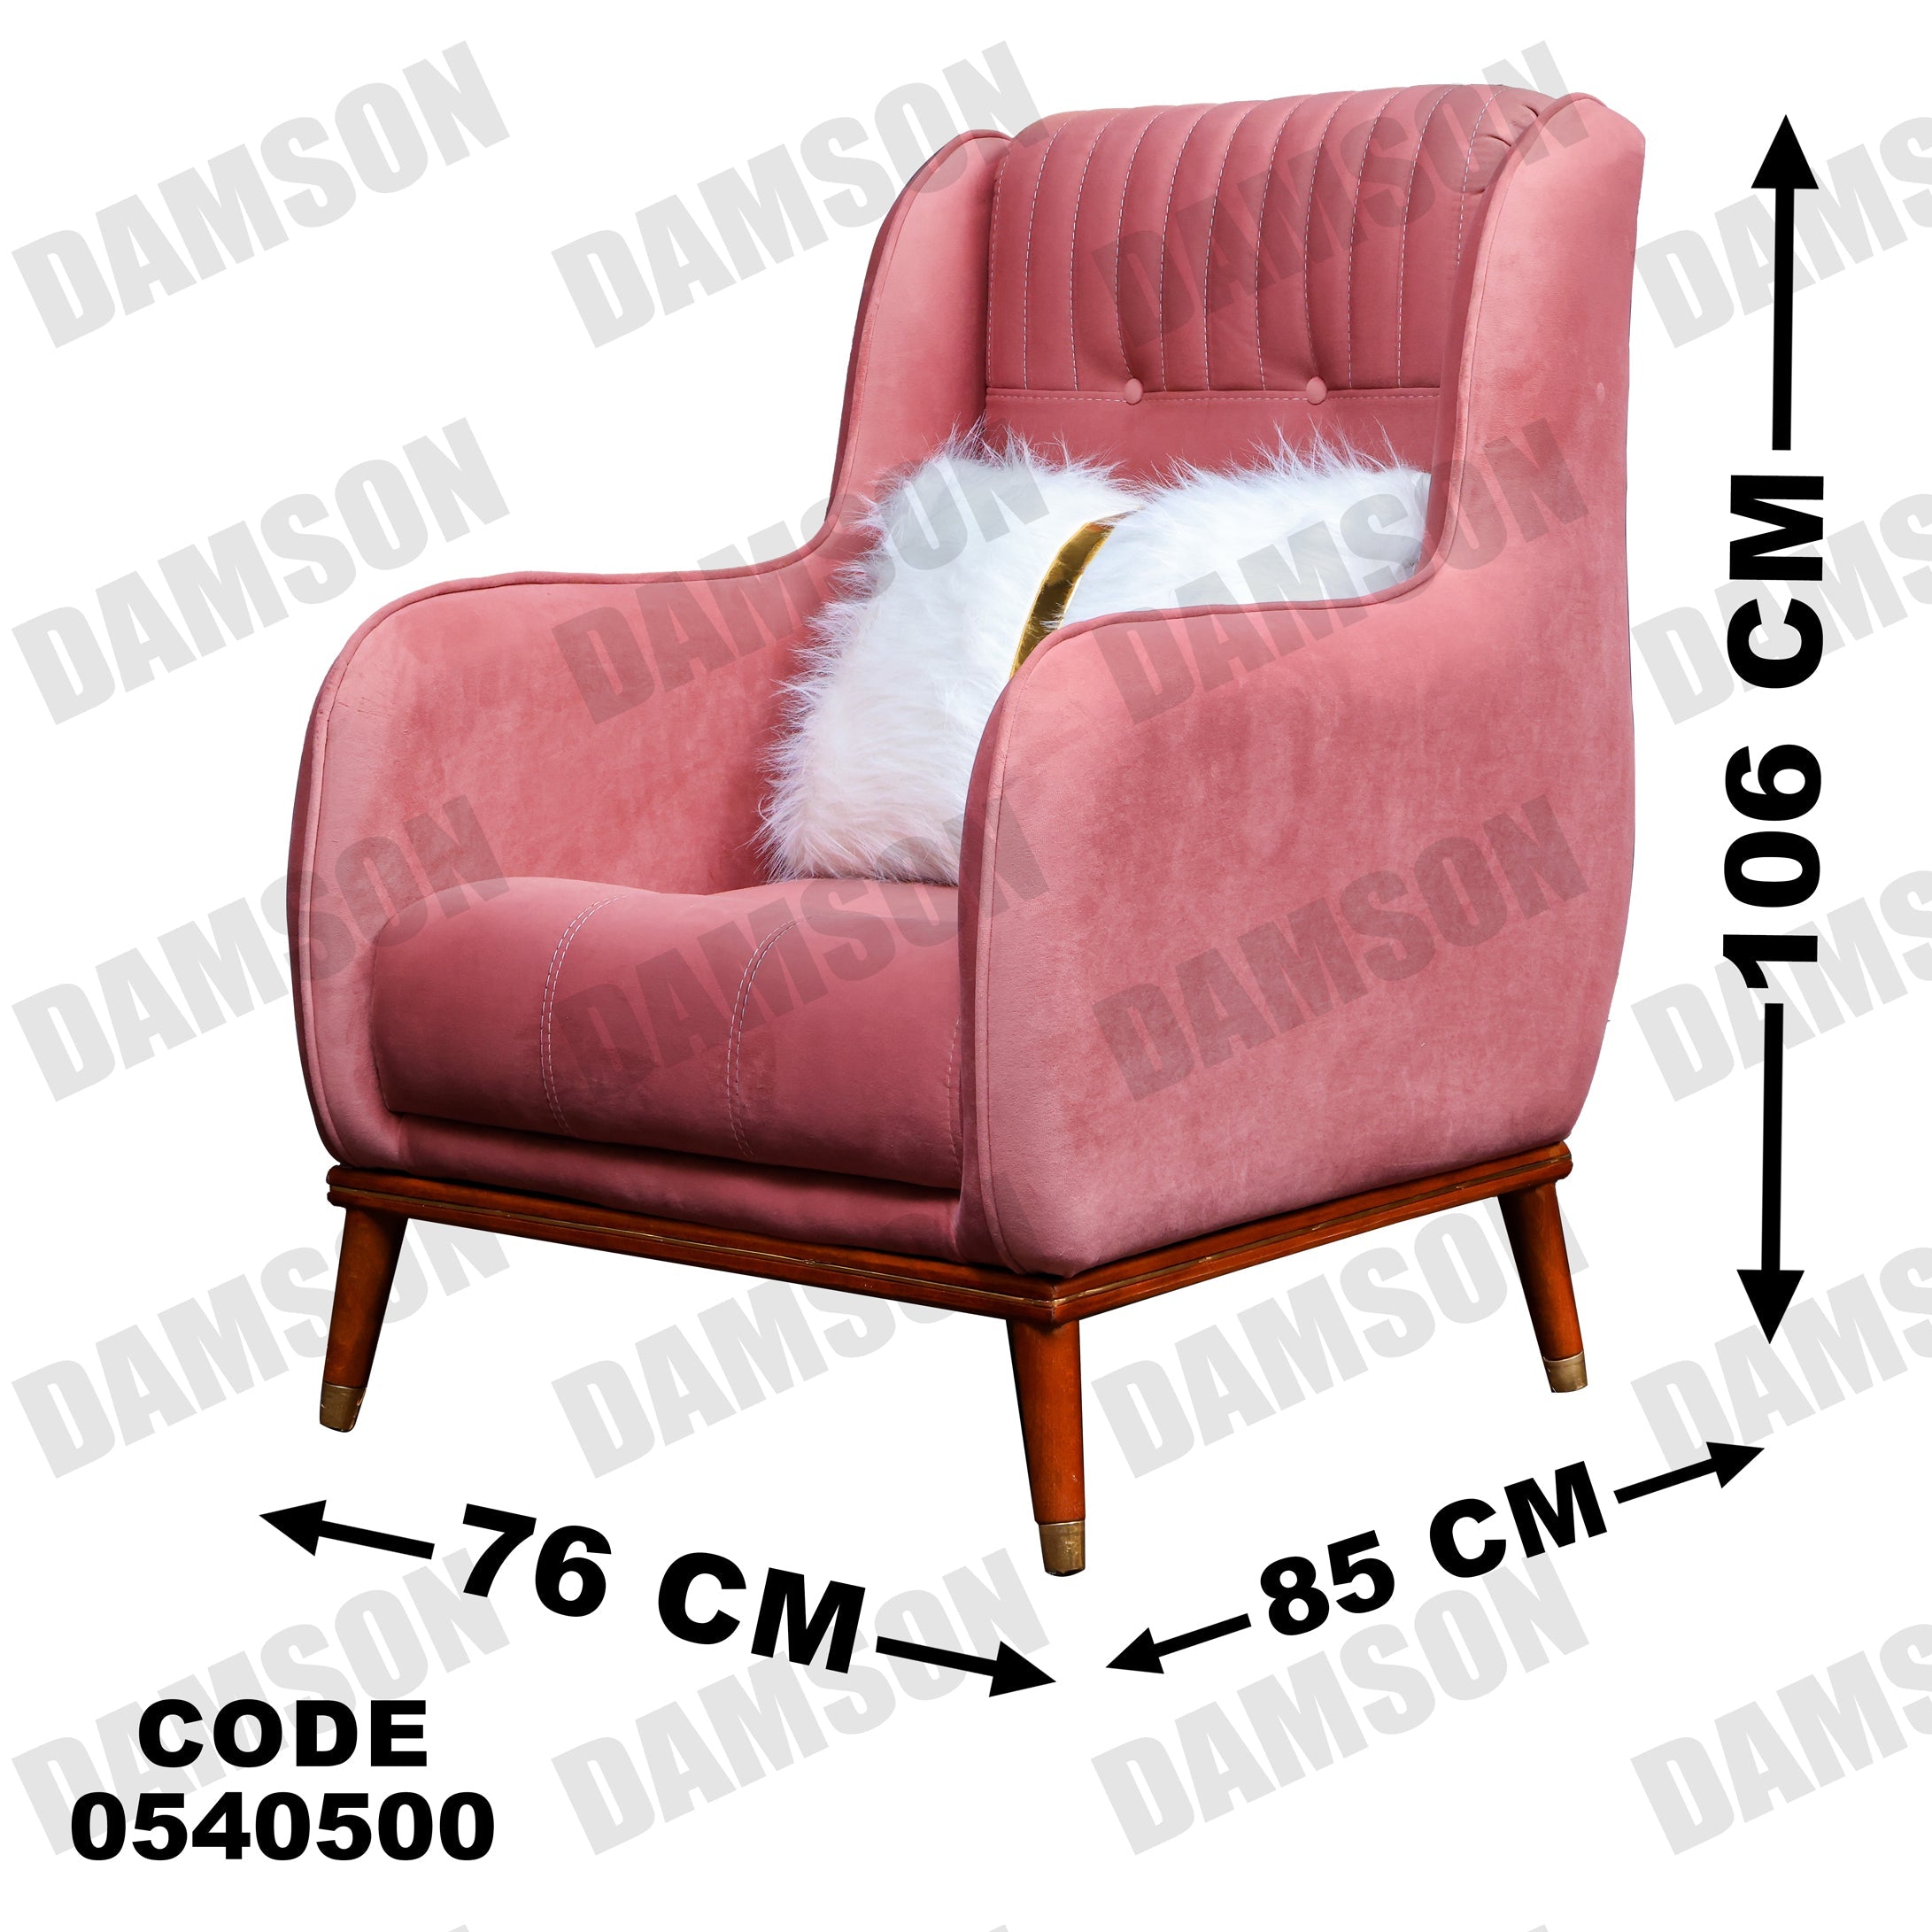 فوتية 2-405 - Damson Furnitureفوتية 2-405